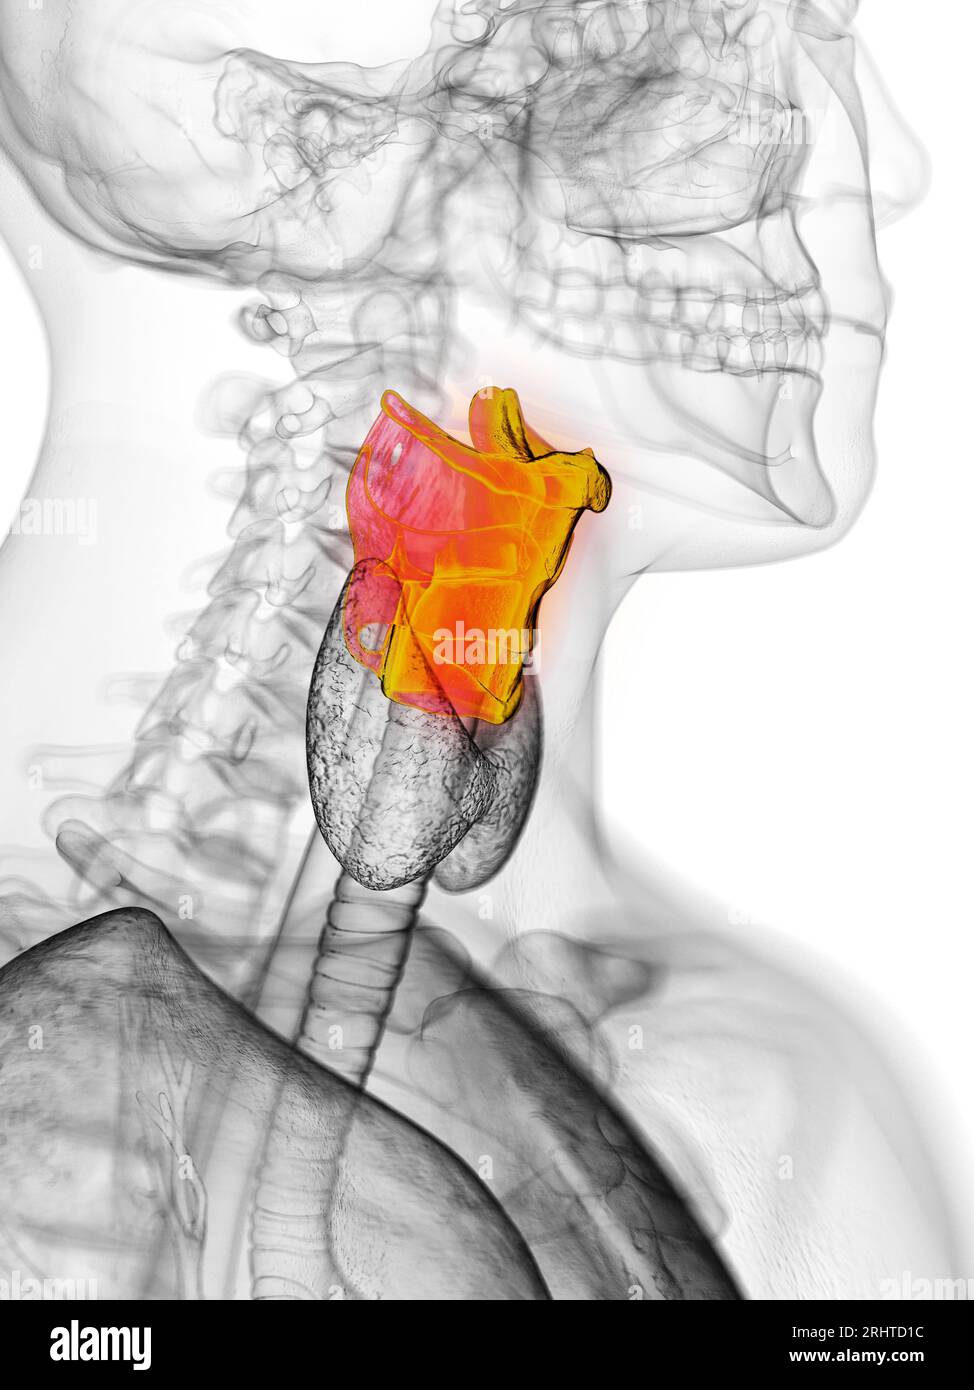 Larynx, illustration Stock Photo